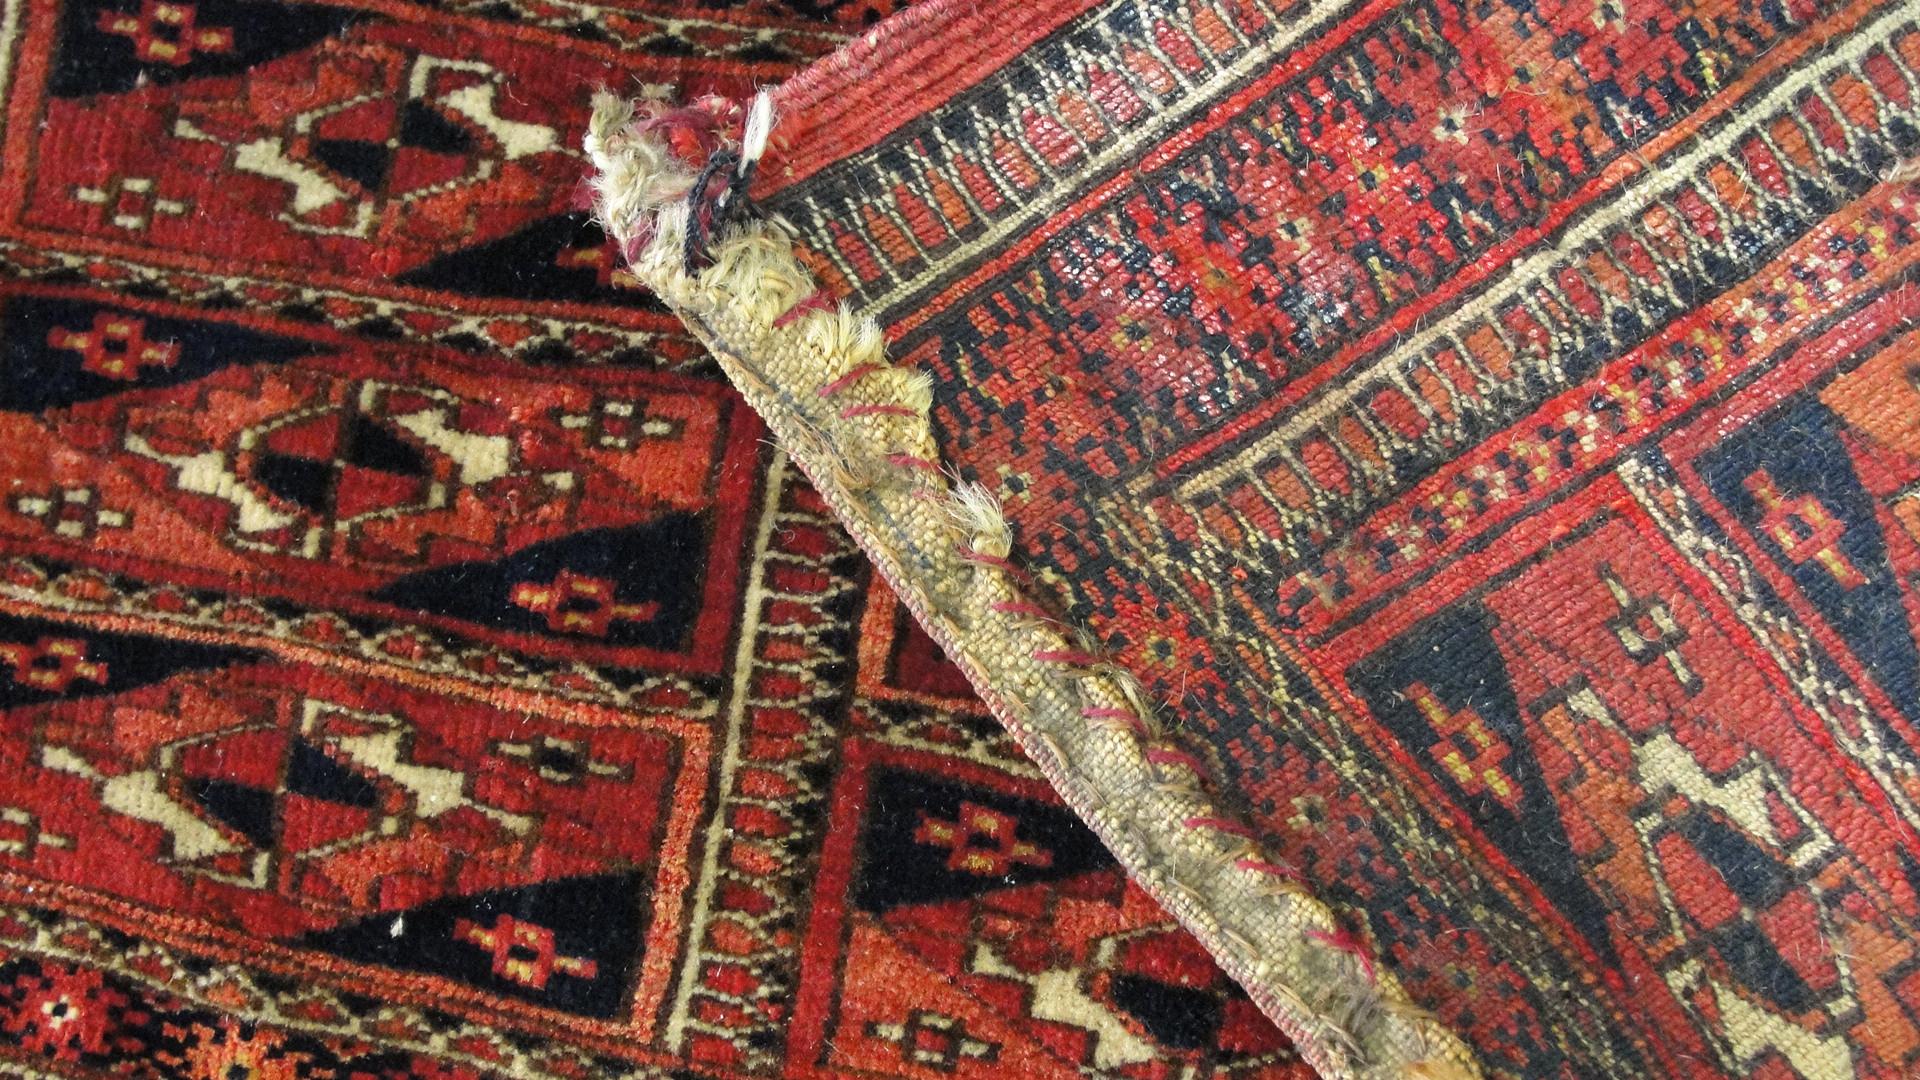   Embarquez pour un voyage dans le temps et découvrez la riche histoire des tapis turkmènes, témoignage des tribus nomades qui fabriquaient ces chefs-d'œuvre il y a plusieurs siècles. À une époque révolue, ces artisans utilisaient des matériaux